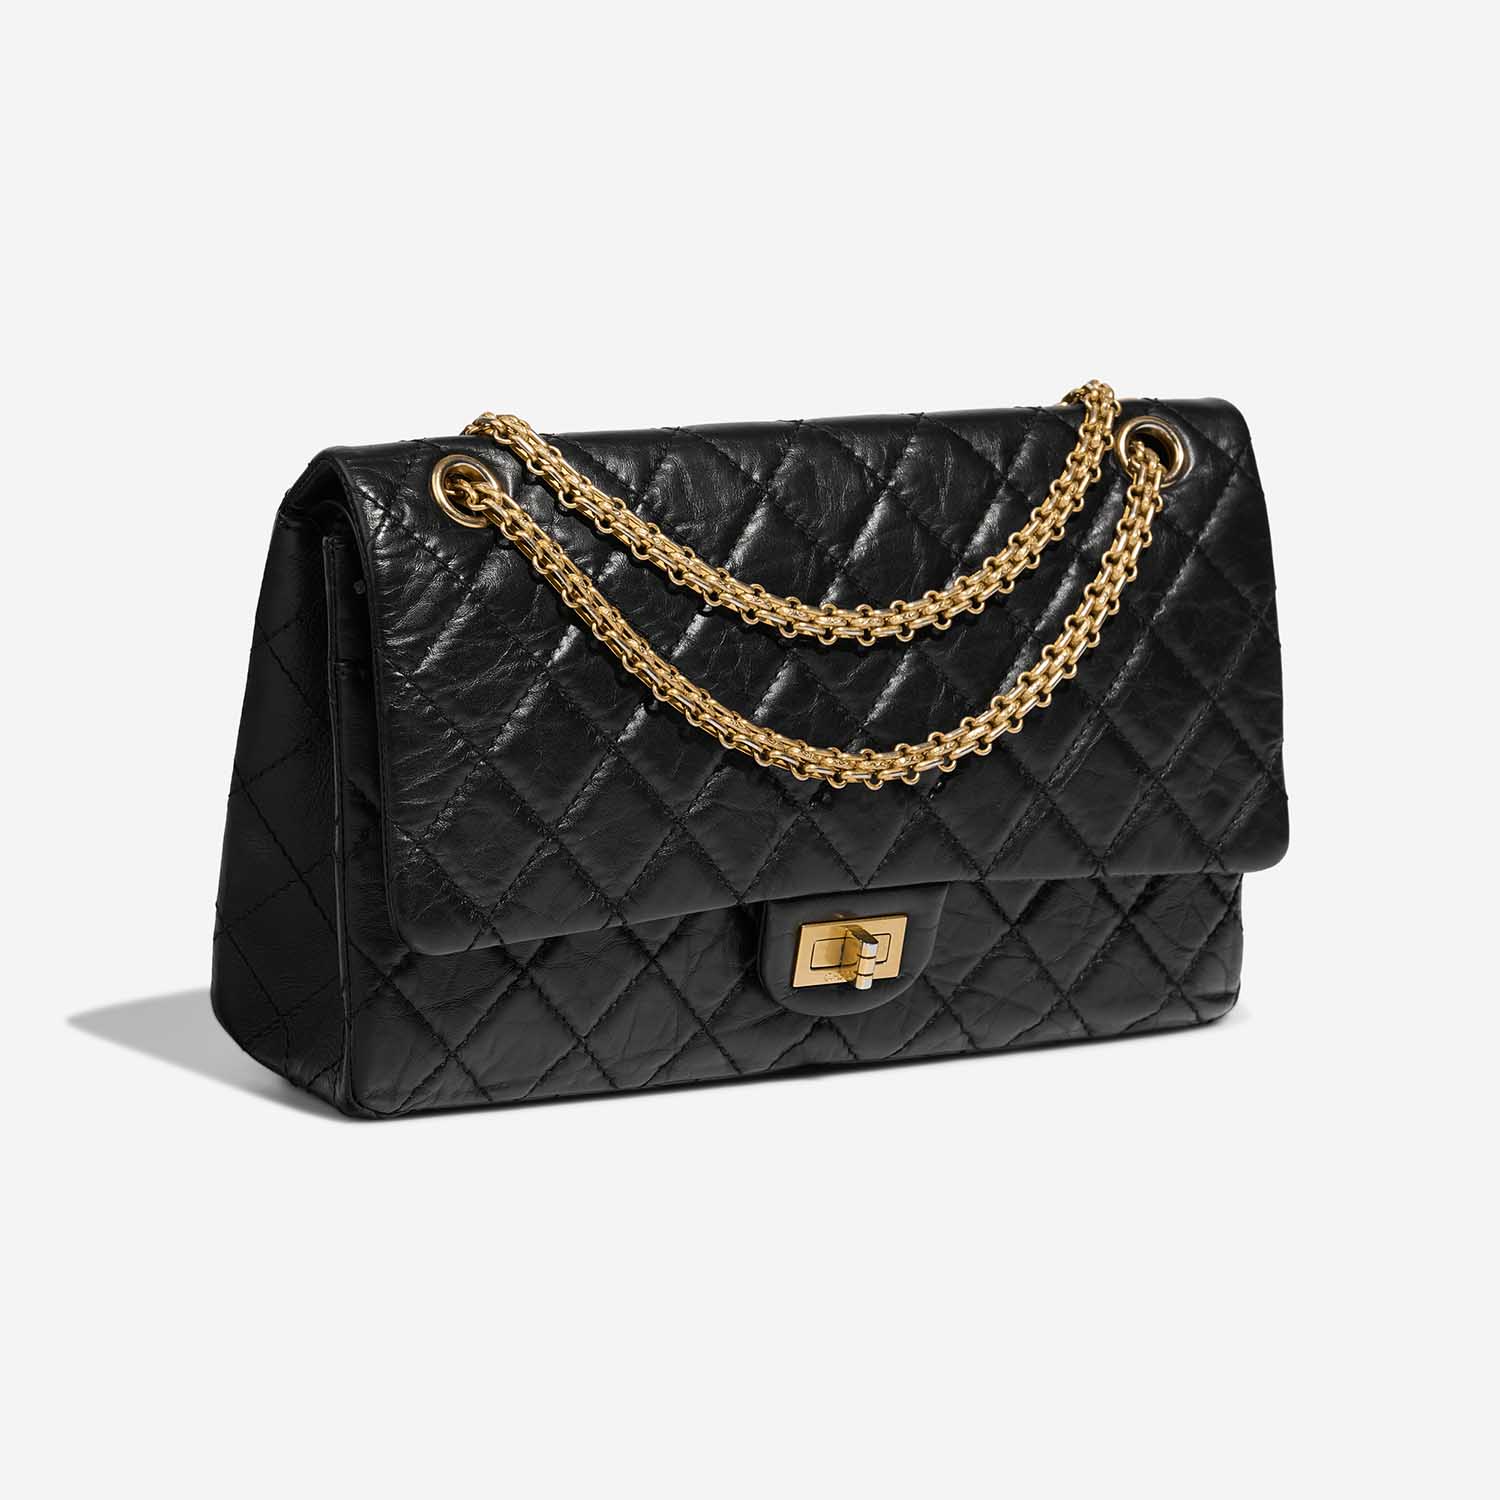 Chanel 255 226 Schwarz Side Front | Verkaufen Sie Ihre Designer-Tasche auf Saclab.com